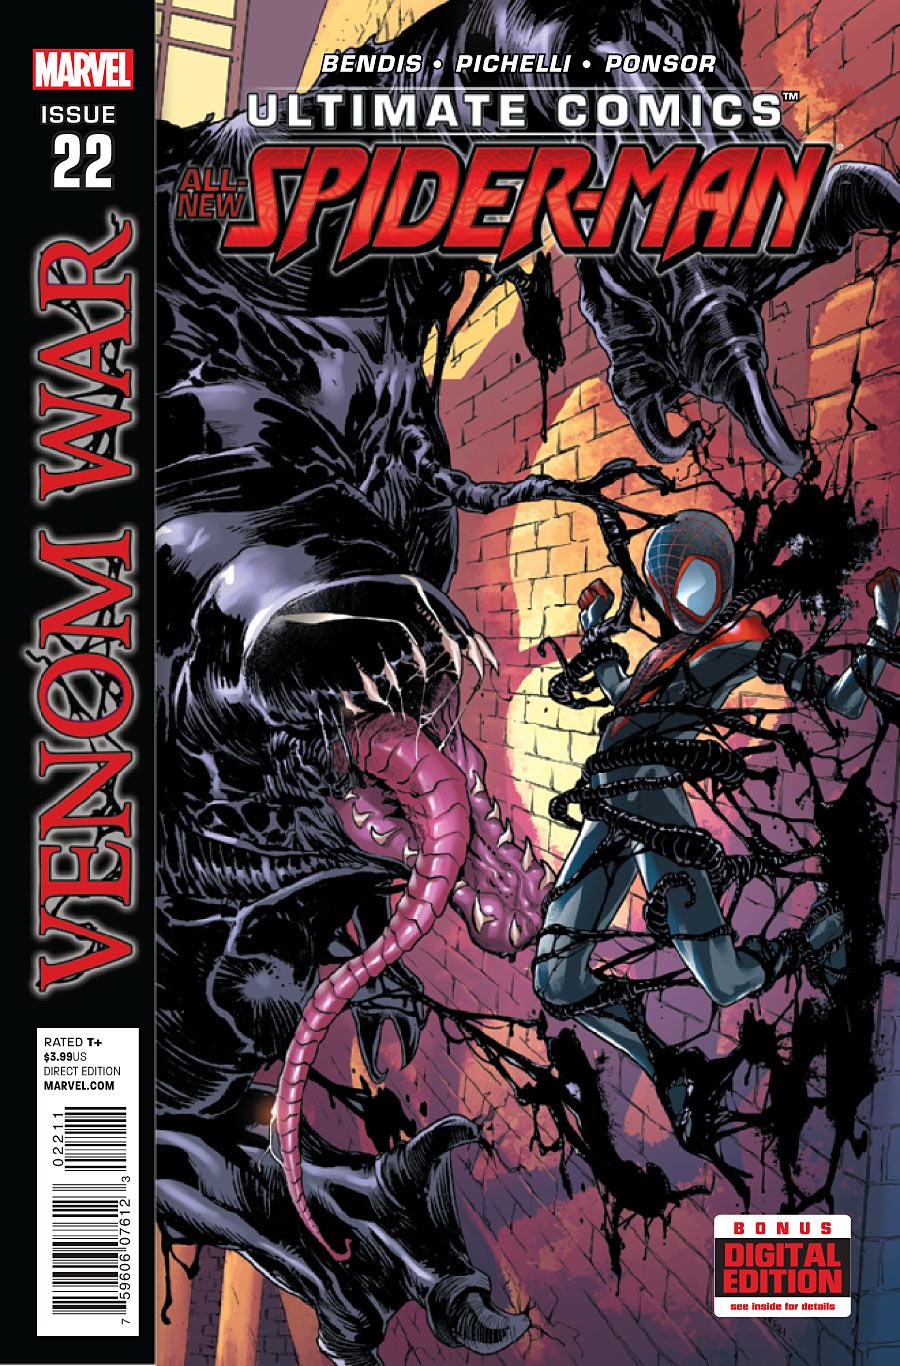 Ultimate Comics Spider-Man Vol. 2 #22